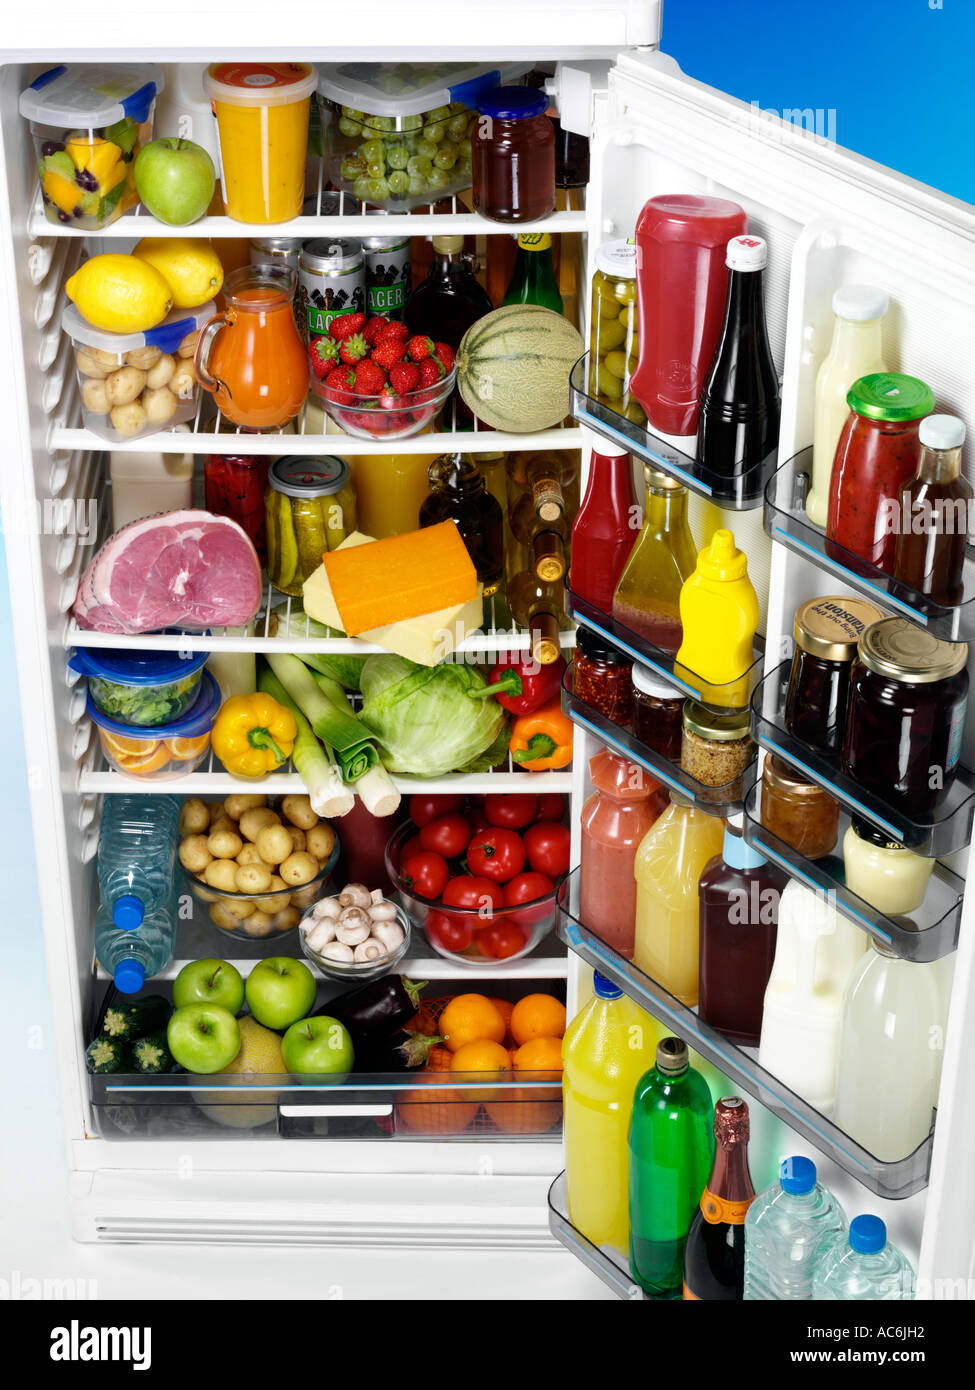 Что нужно купить домой. Холодильник с продуктами. Полный холодильник продуктов. Холодильник с едой. Полный холодильник фруктов.